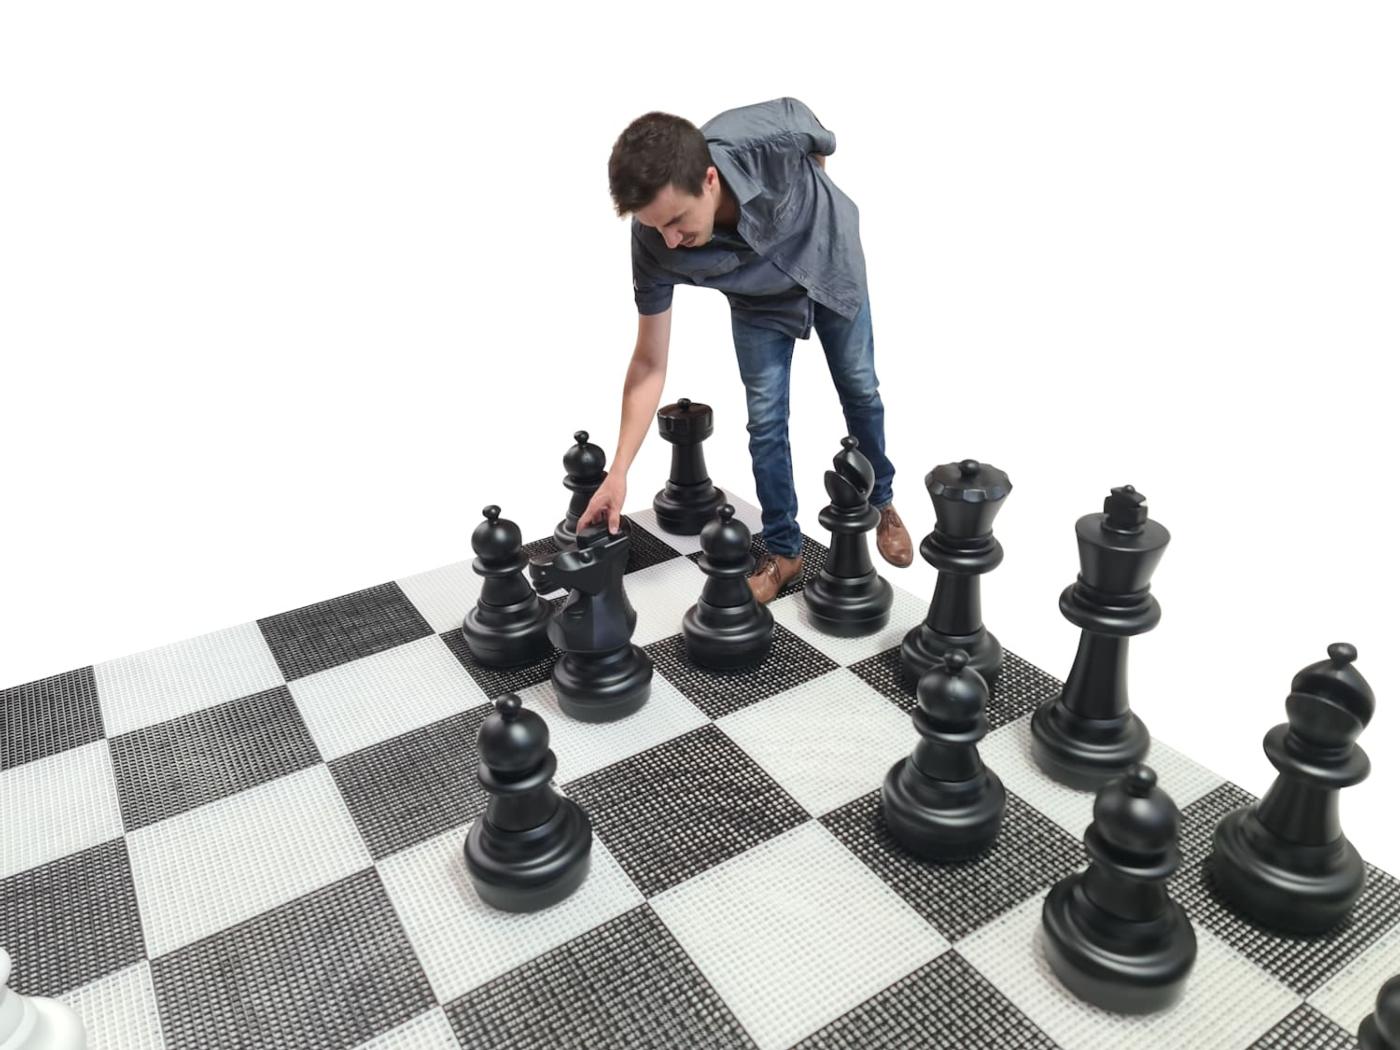 Jogo de xadrez gigante com tabuleiro rígido gigante incluido jogo completo com tabuleiro e jogador